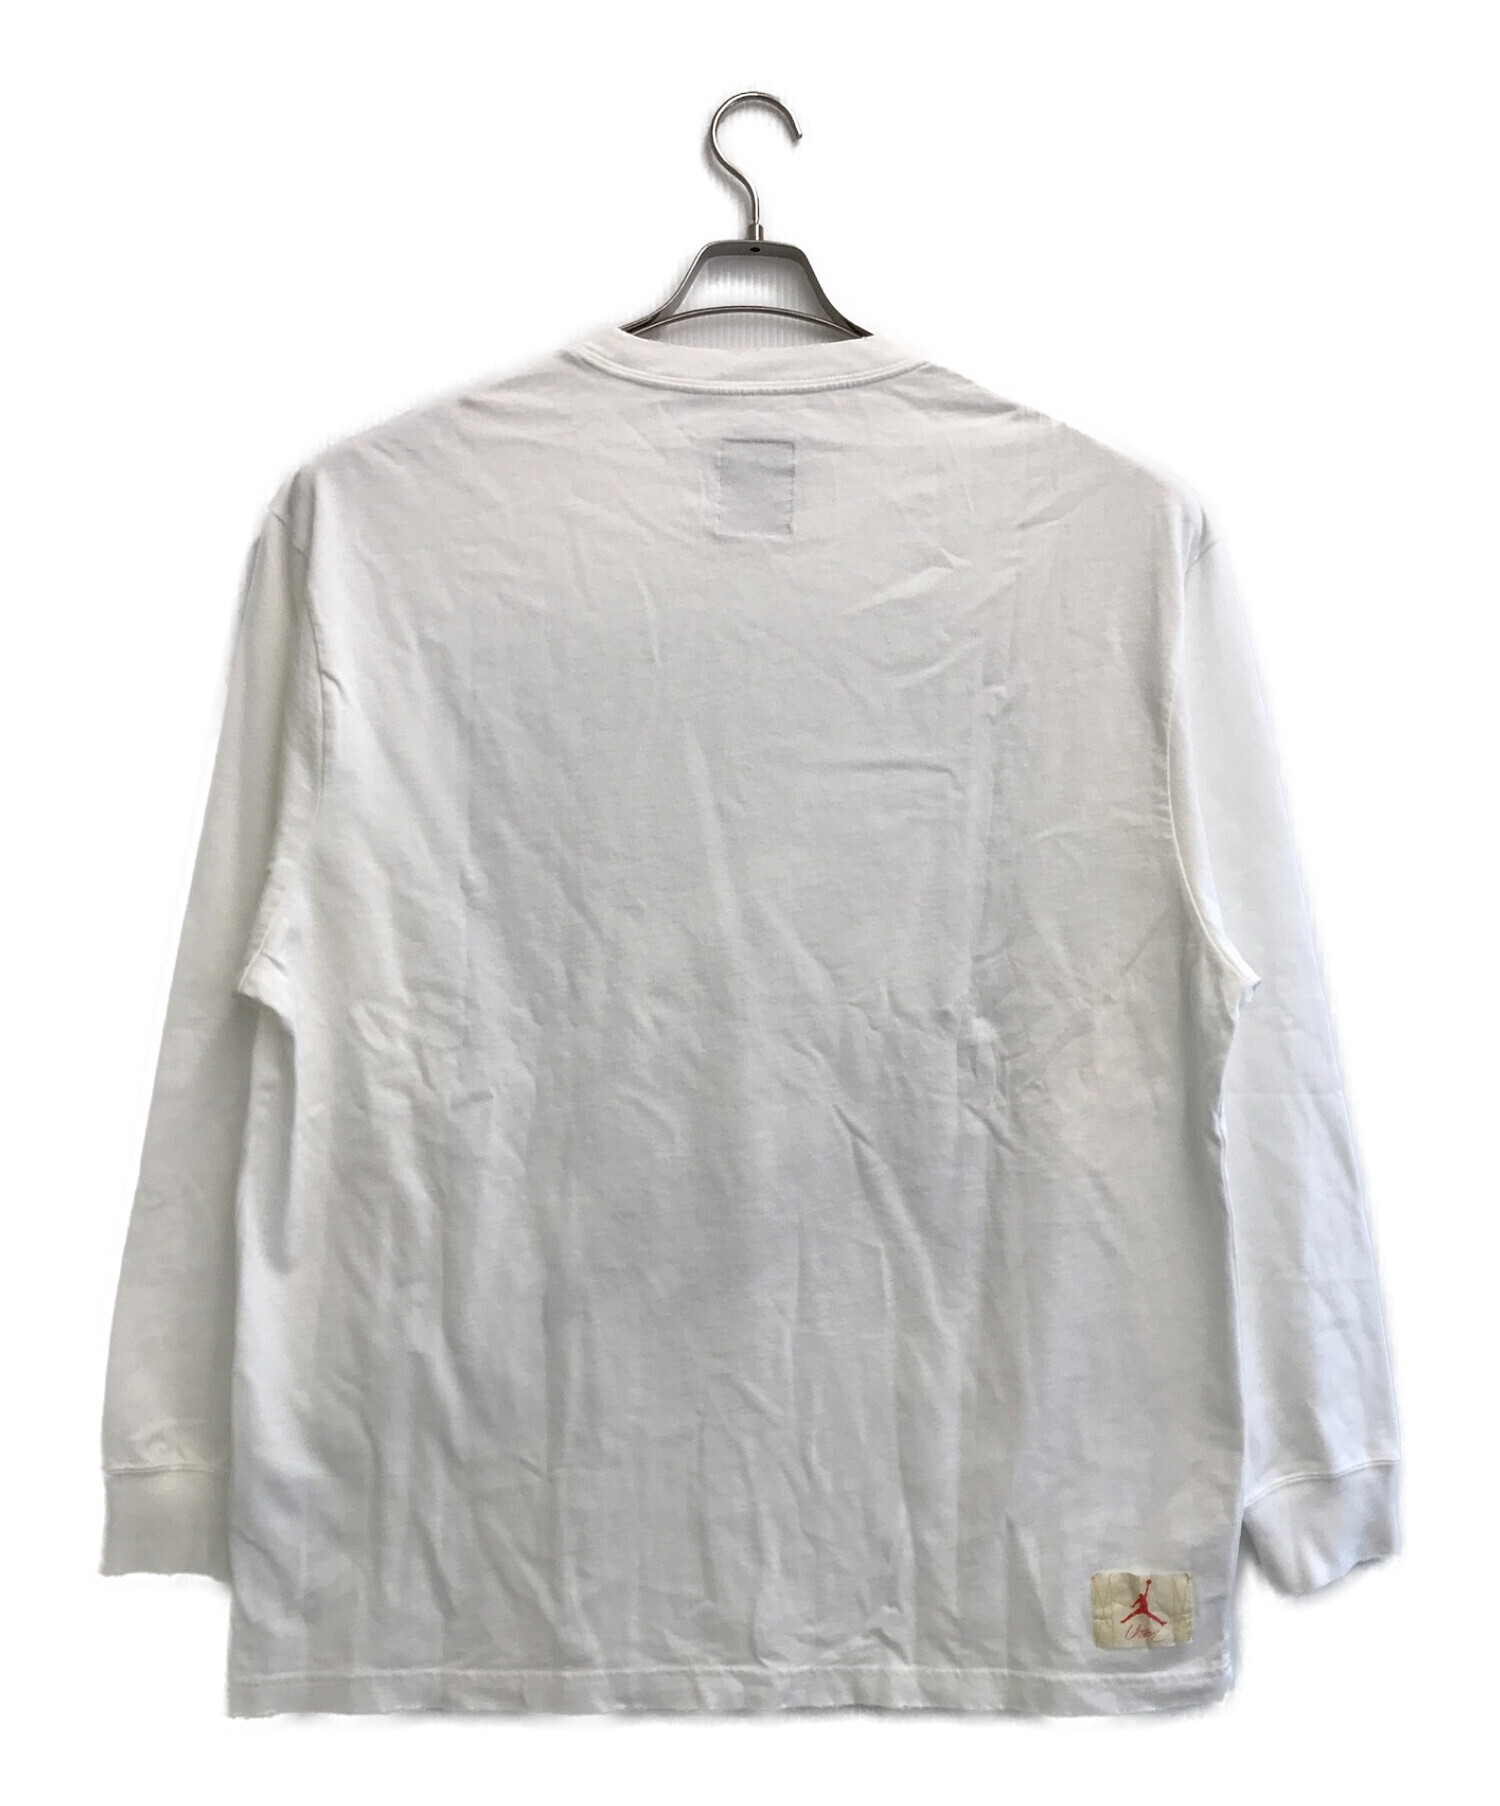 最新作限定SALEM J UNION LS TEE White XL Tシャツ/カットソー(七分/長袖)